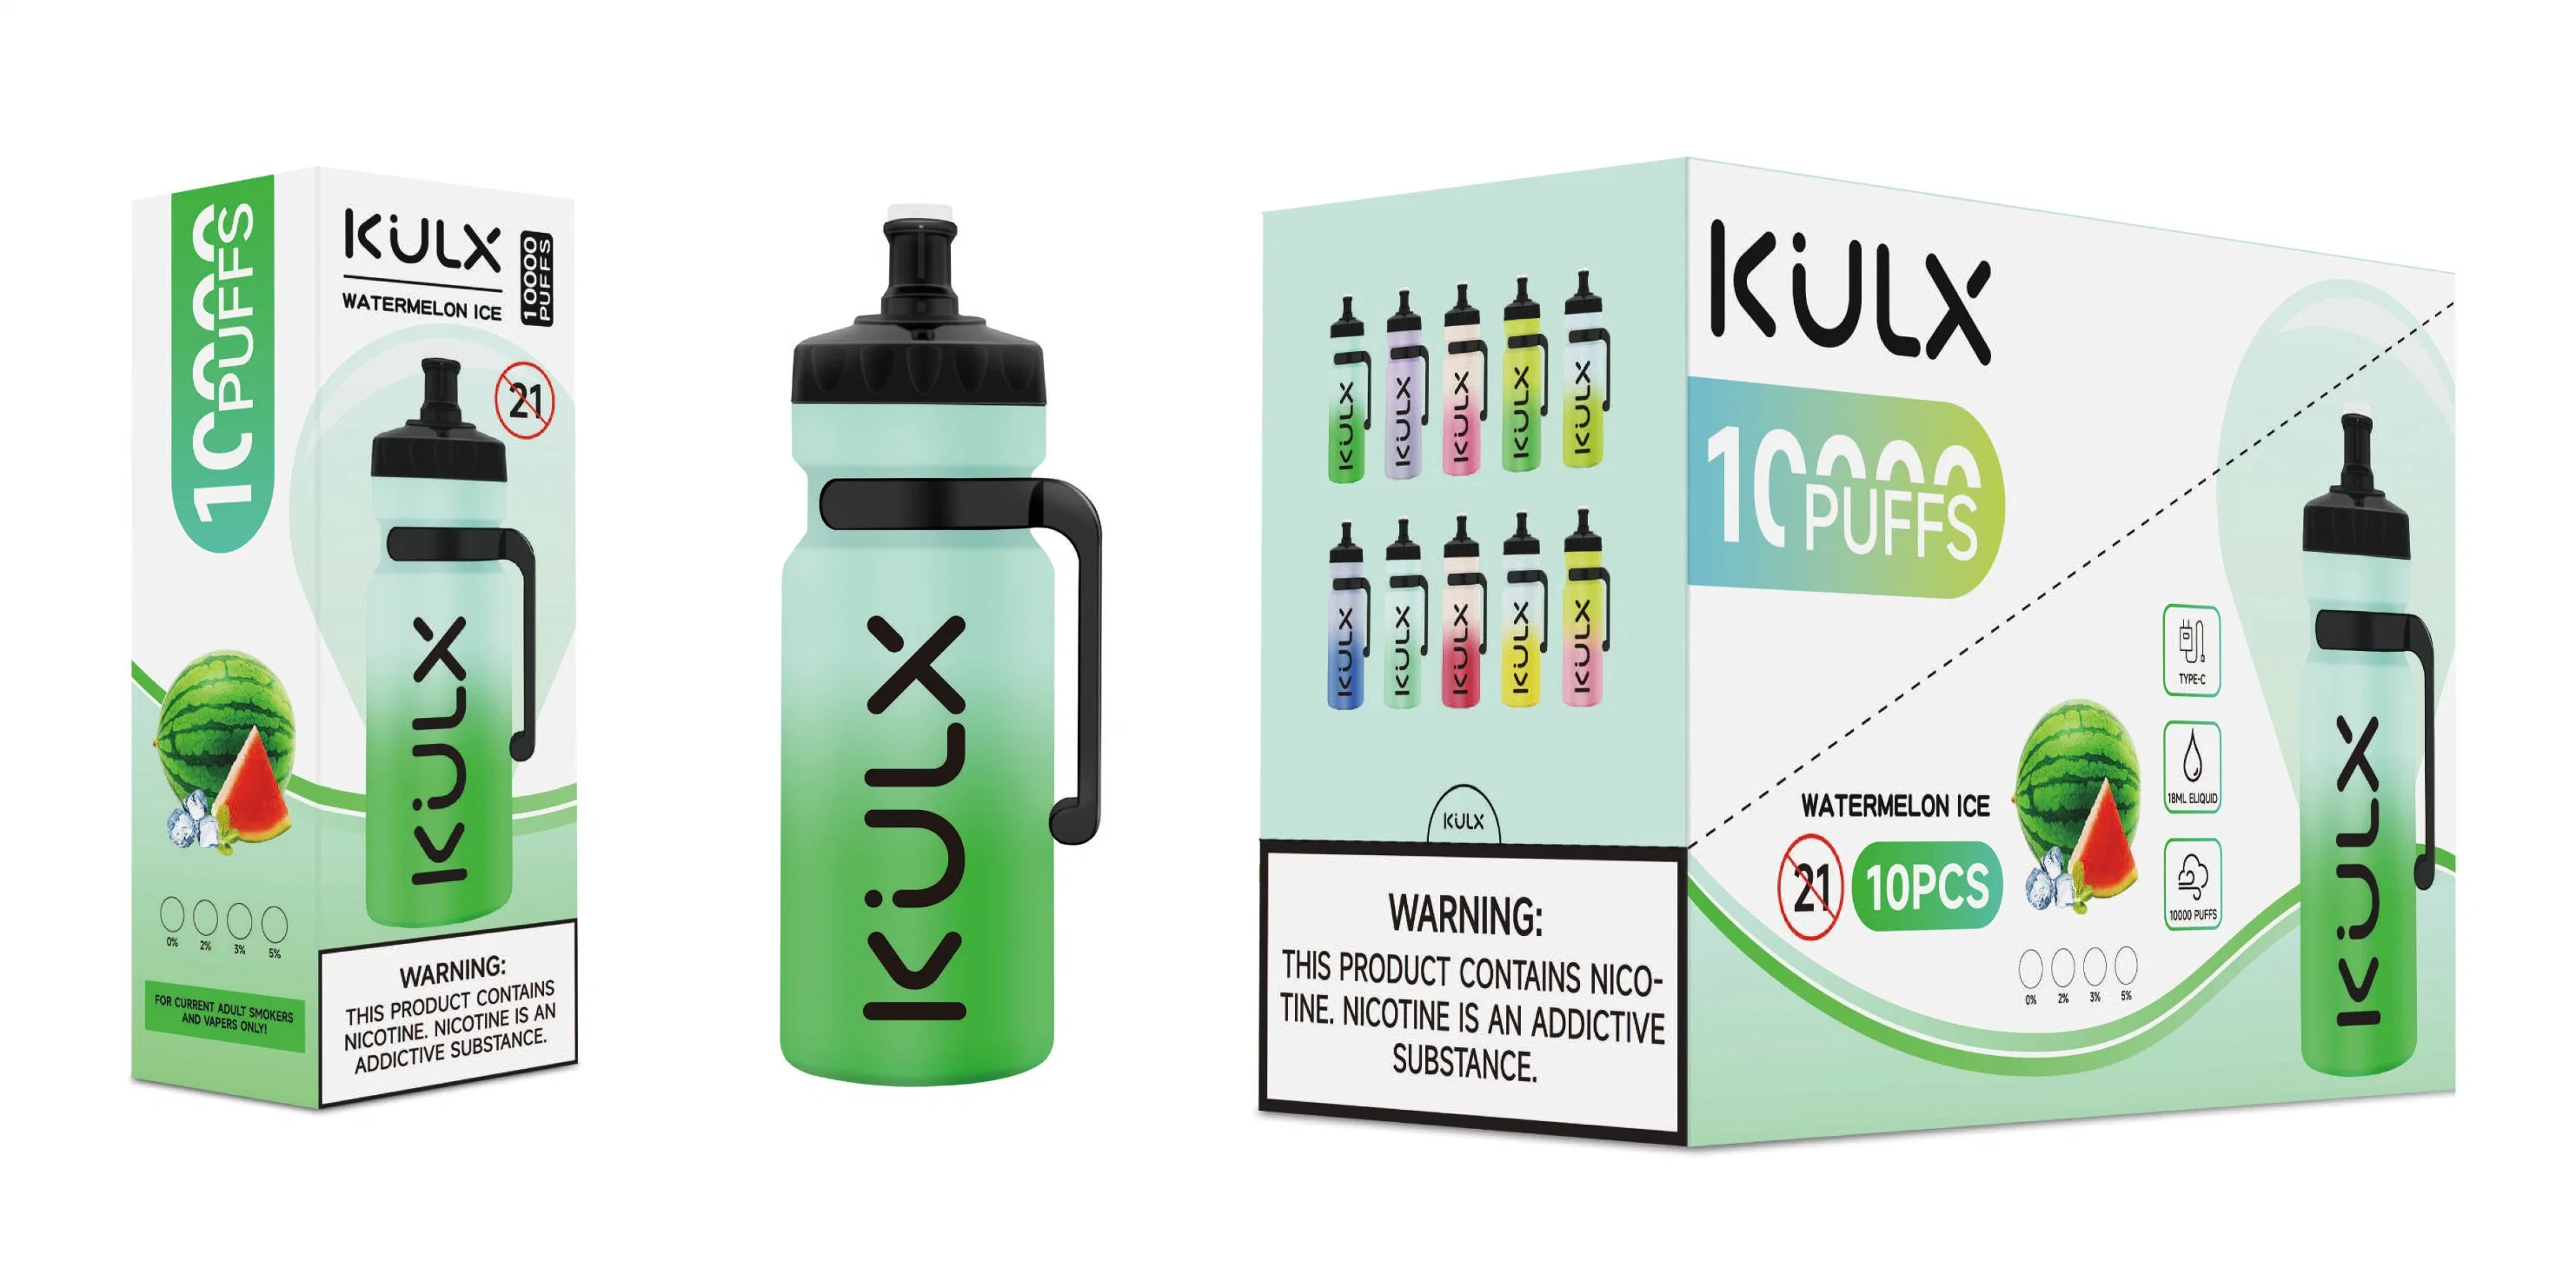 Оригинальные наушники Kulx 10000 с заряжаемые батареи емкостью 18 мл, с предварительной зарядкой, 600 мА/ч. E-Cigarette Pen оптом. Одноразовый, для формы